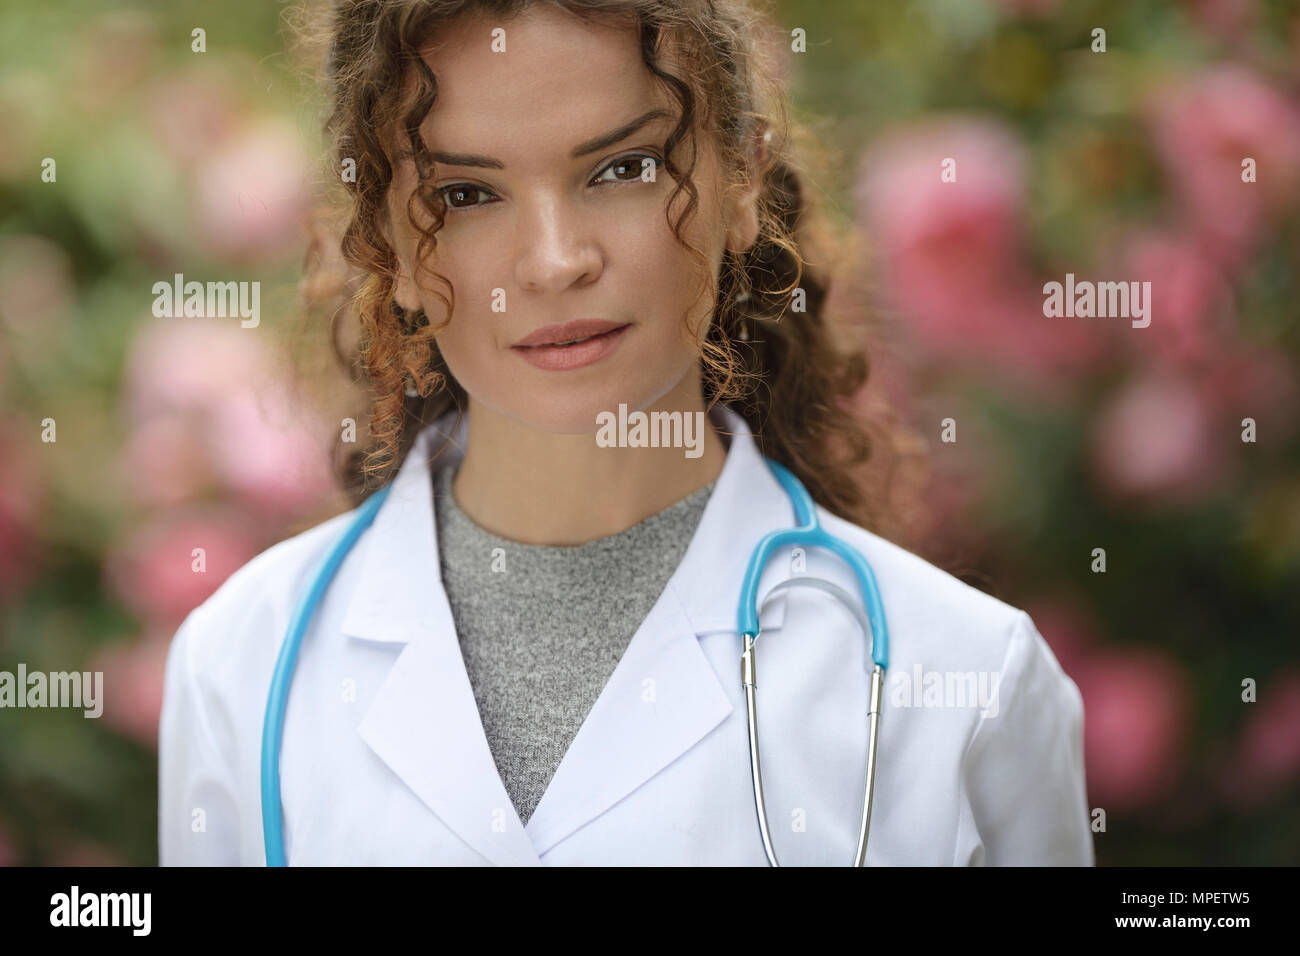 Portrait d'une jeune femme, médecin, professionnel de santé, médecin, médecin de porter une blouse de laboratoire en plein air naturel avec blosso Banque D'Images